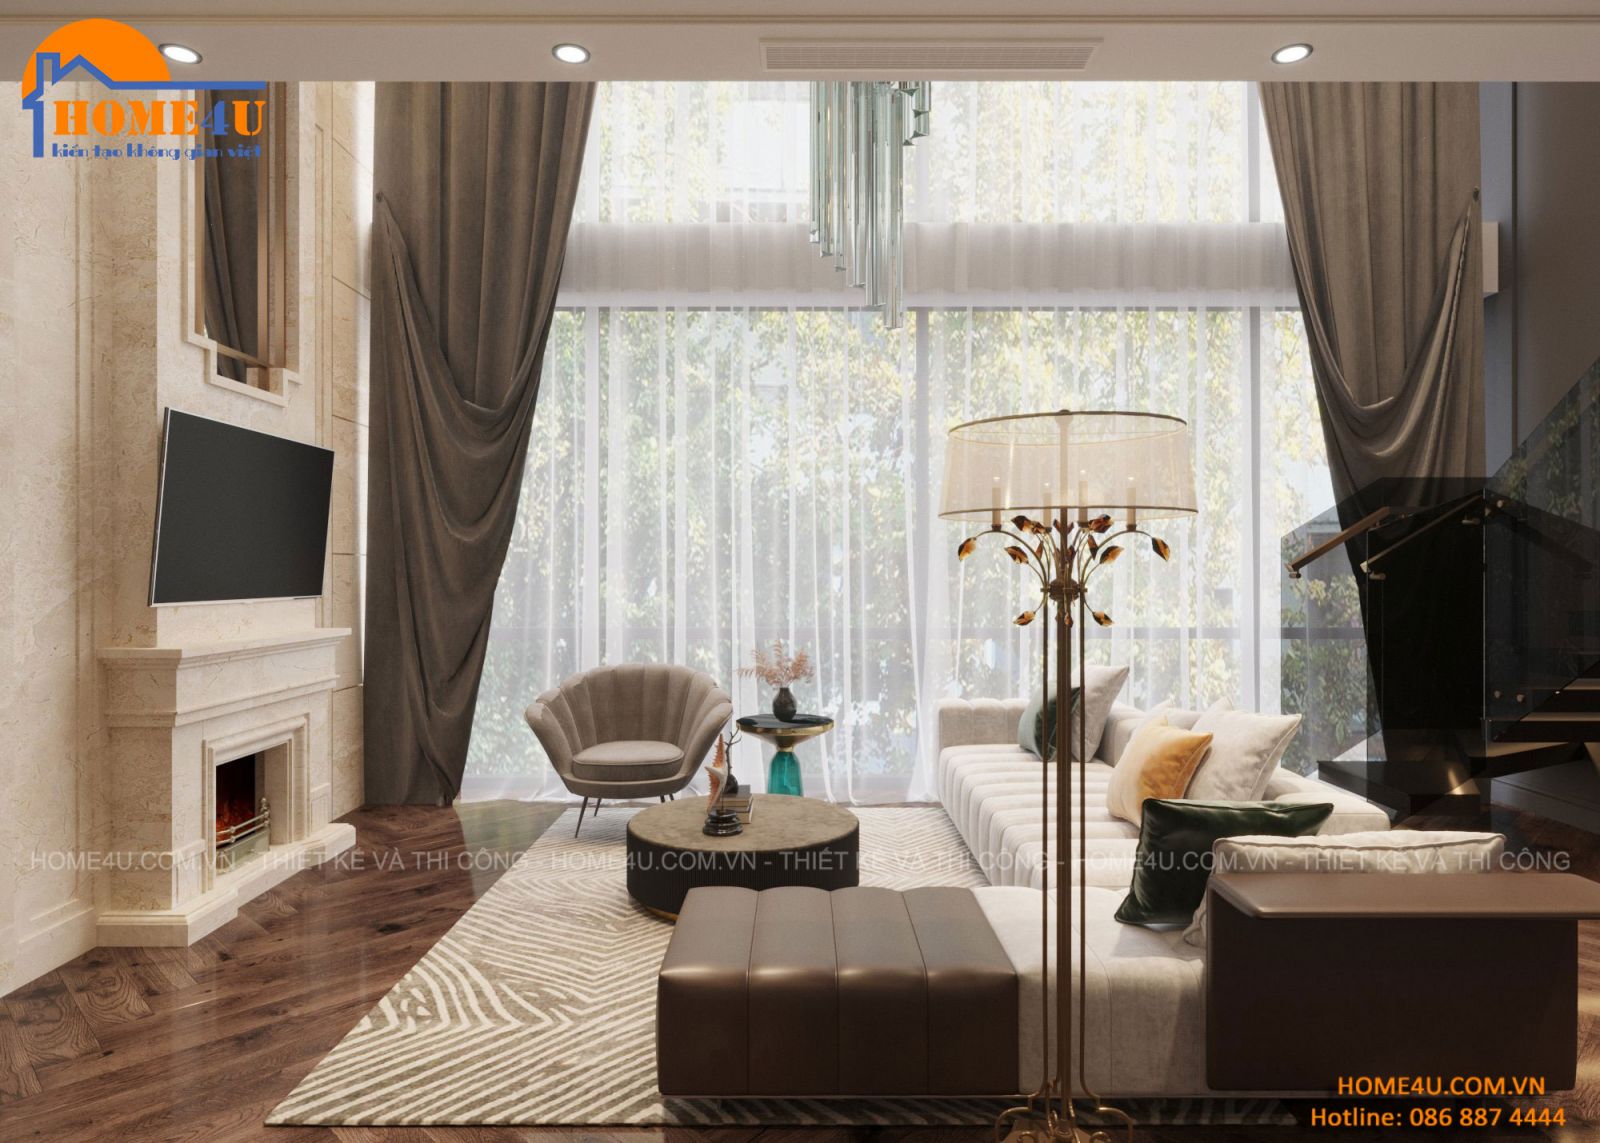 Thiết kế nội thất nhà phố 7 tầng hiện đại anh Tuấn - NTNP2013 27